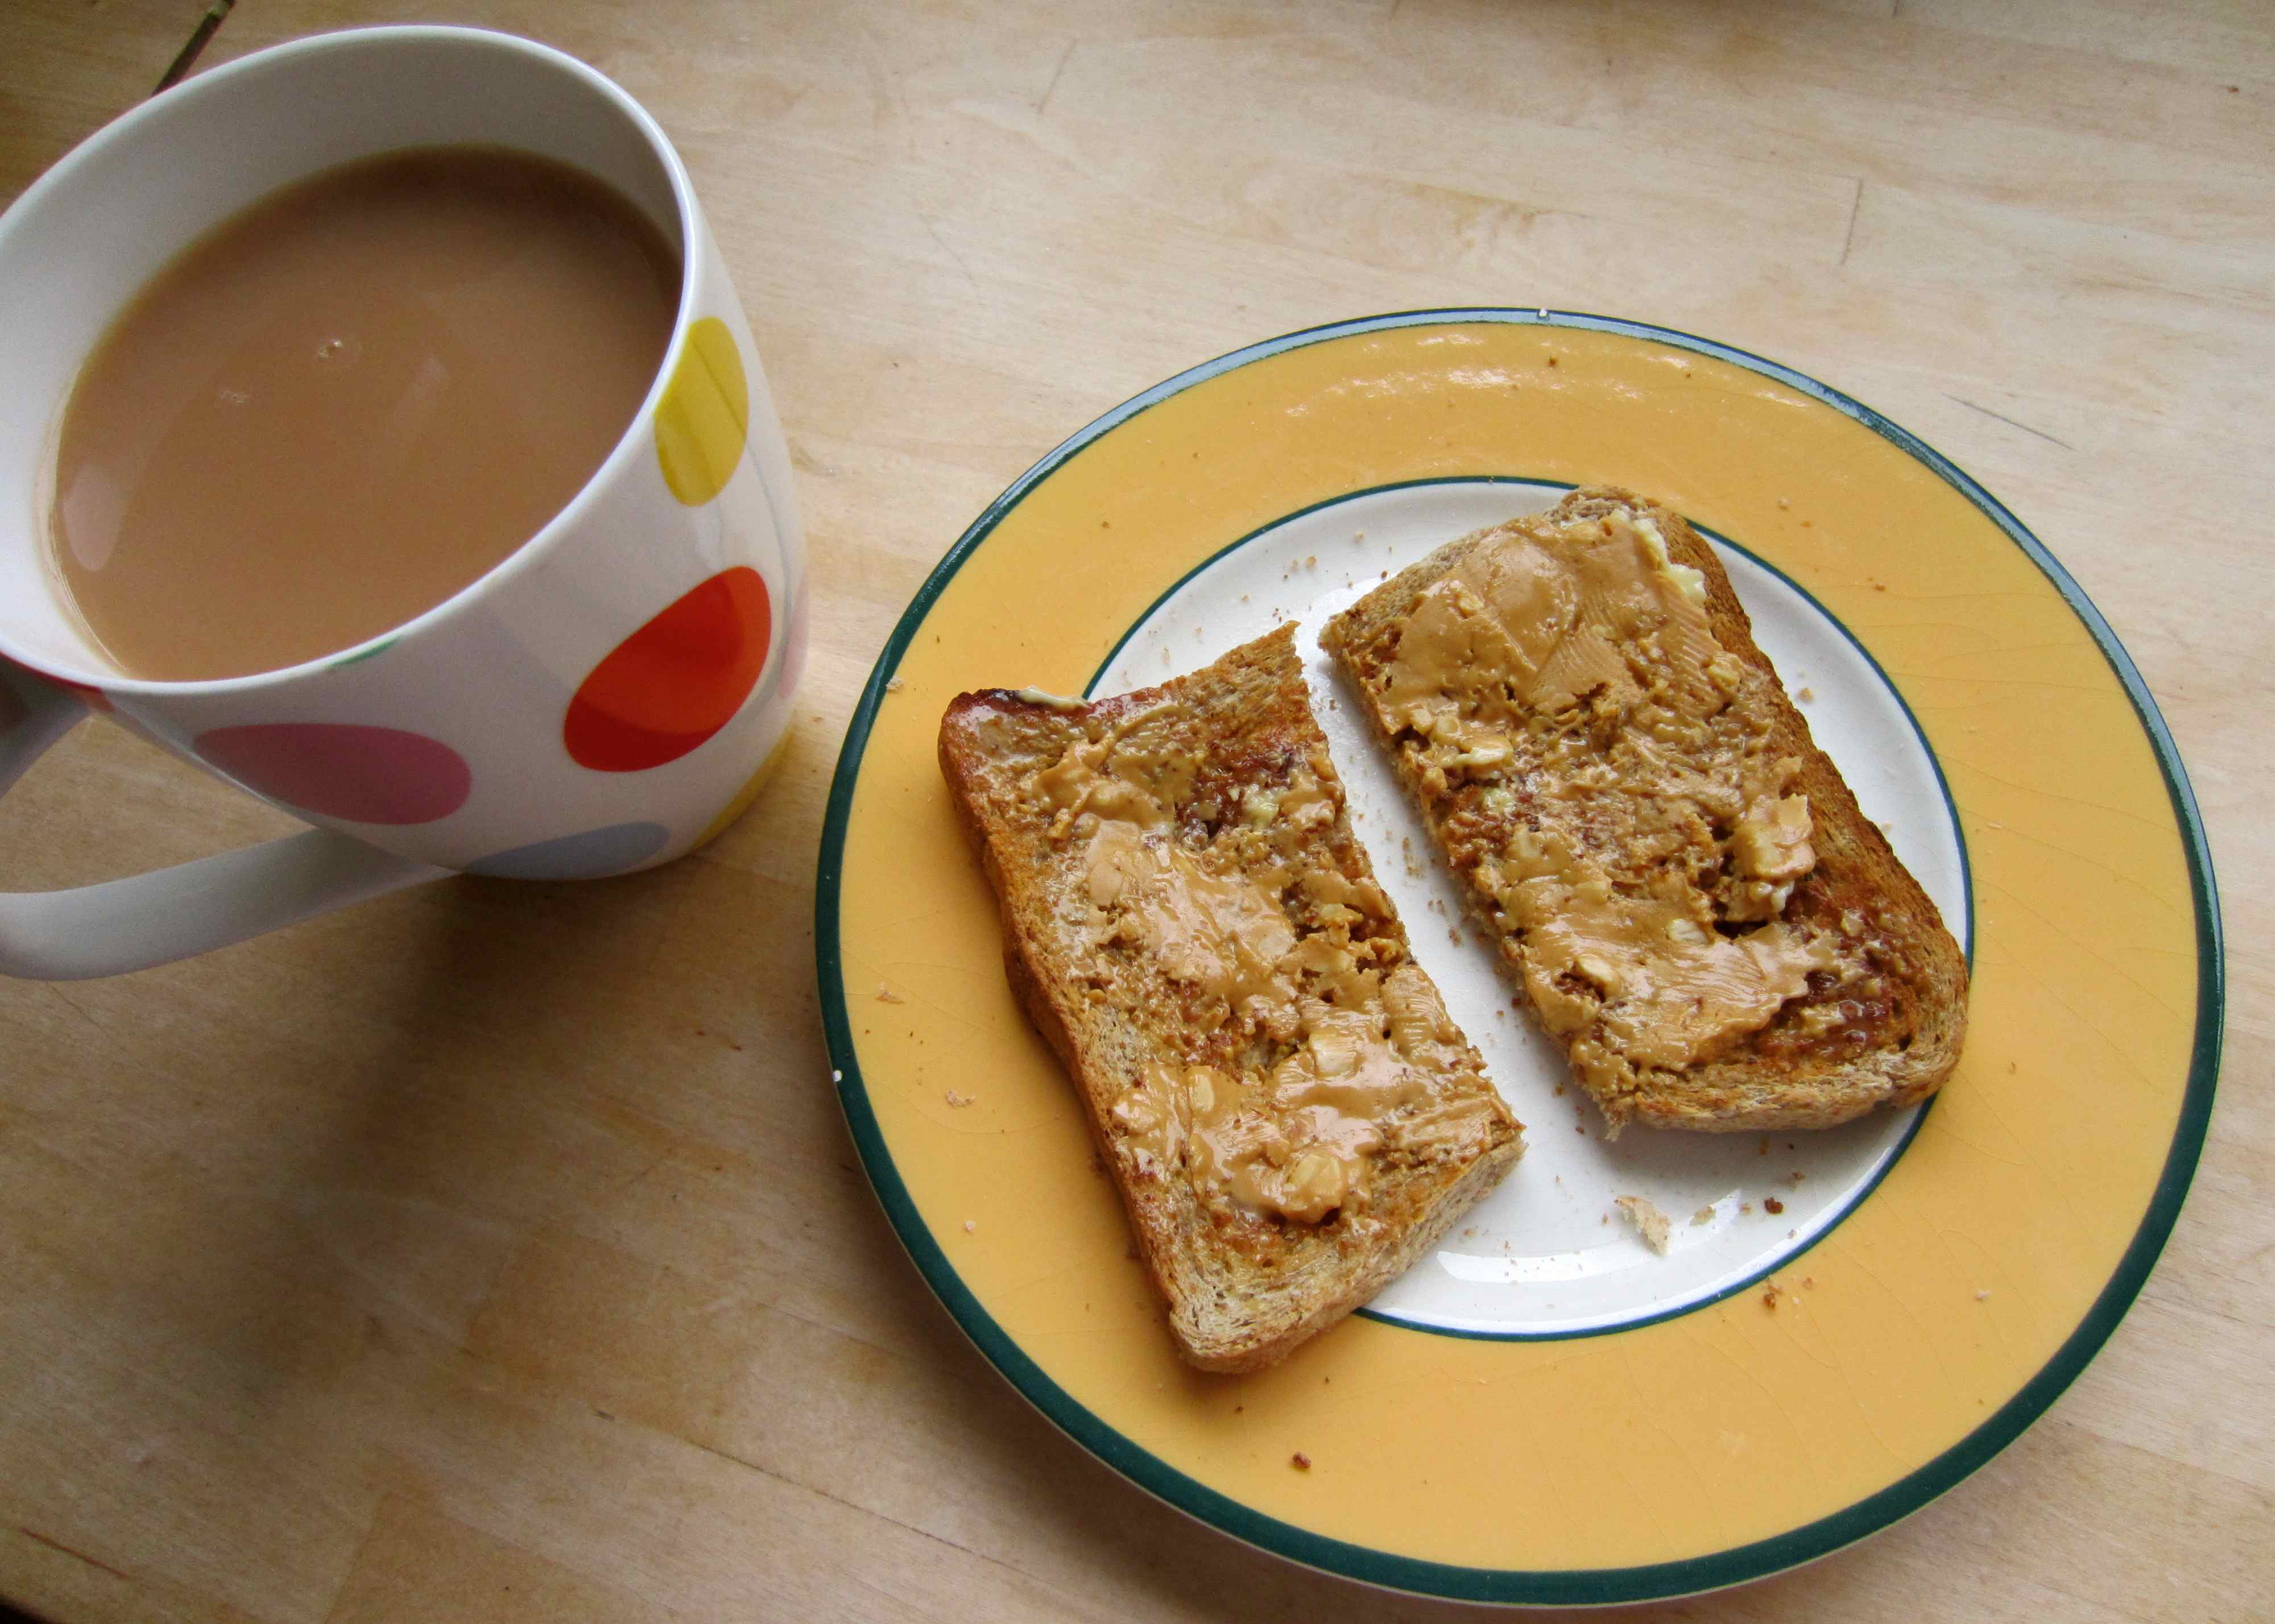 almond-butter-on-toast-and-tea.jpg